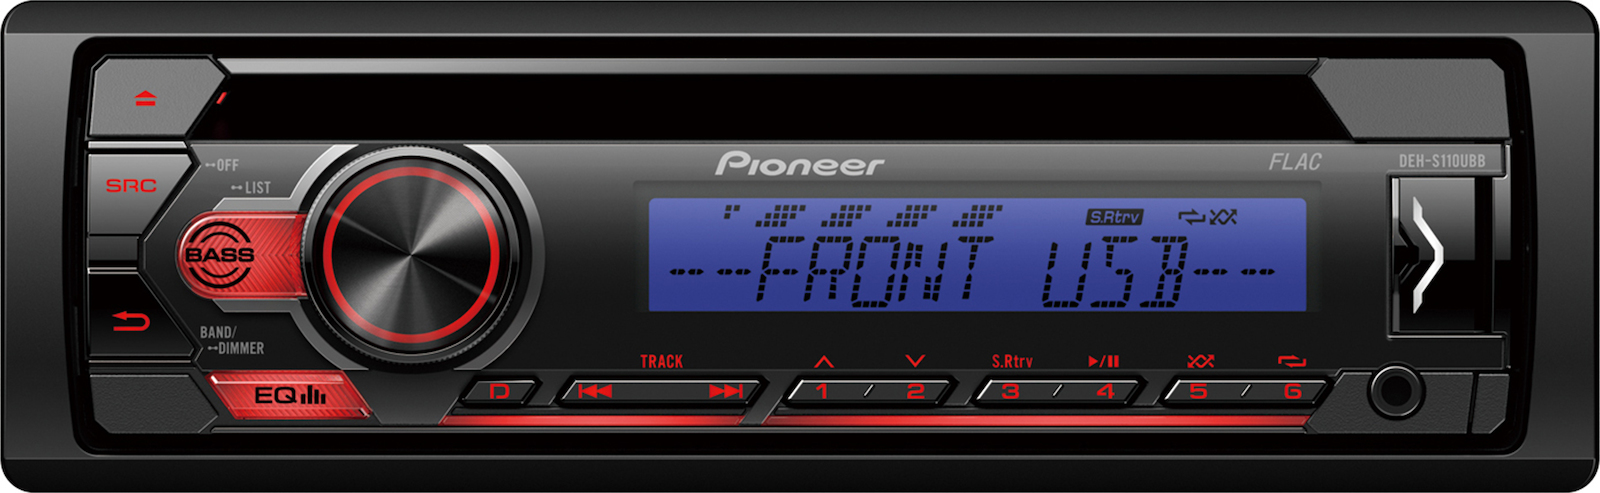 Pioneer DEH-S110UBB Ραδιο-CD με USB με μπλε-κοκκινο